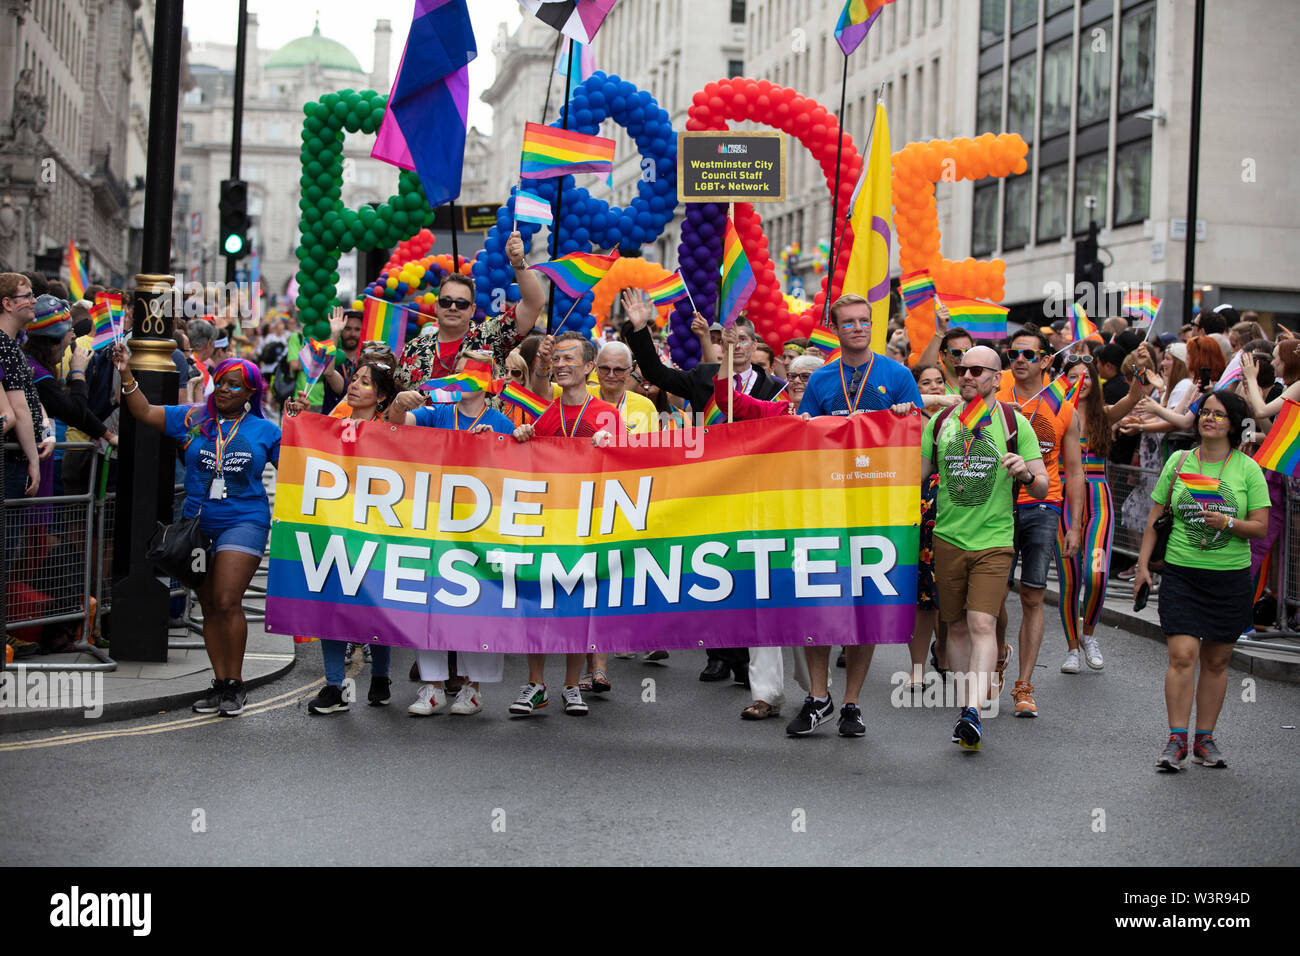 Londres, UK - 6 juillet 2019 : une fierté à Westminster bannière dans la gay pride annuelle de mars dans le centre de Londres Banque D'Images